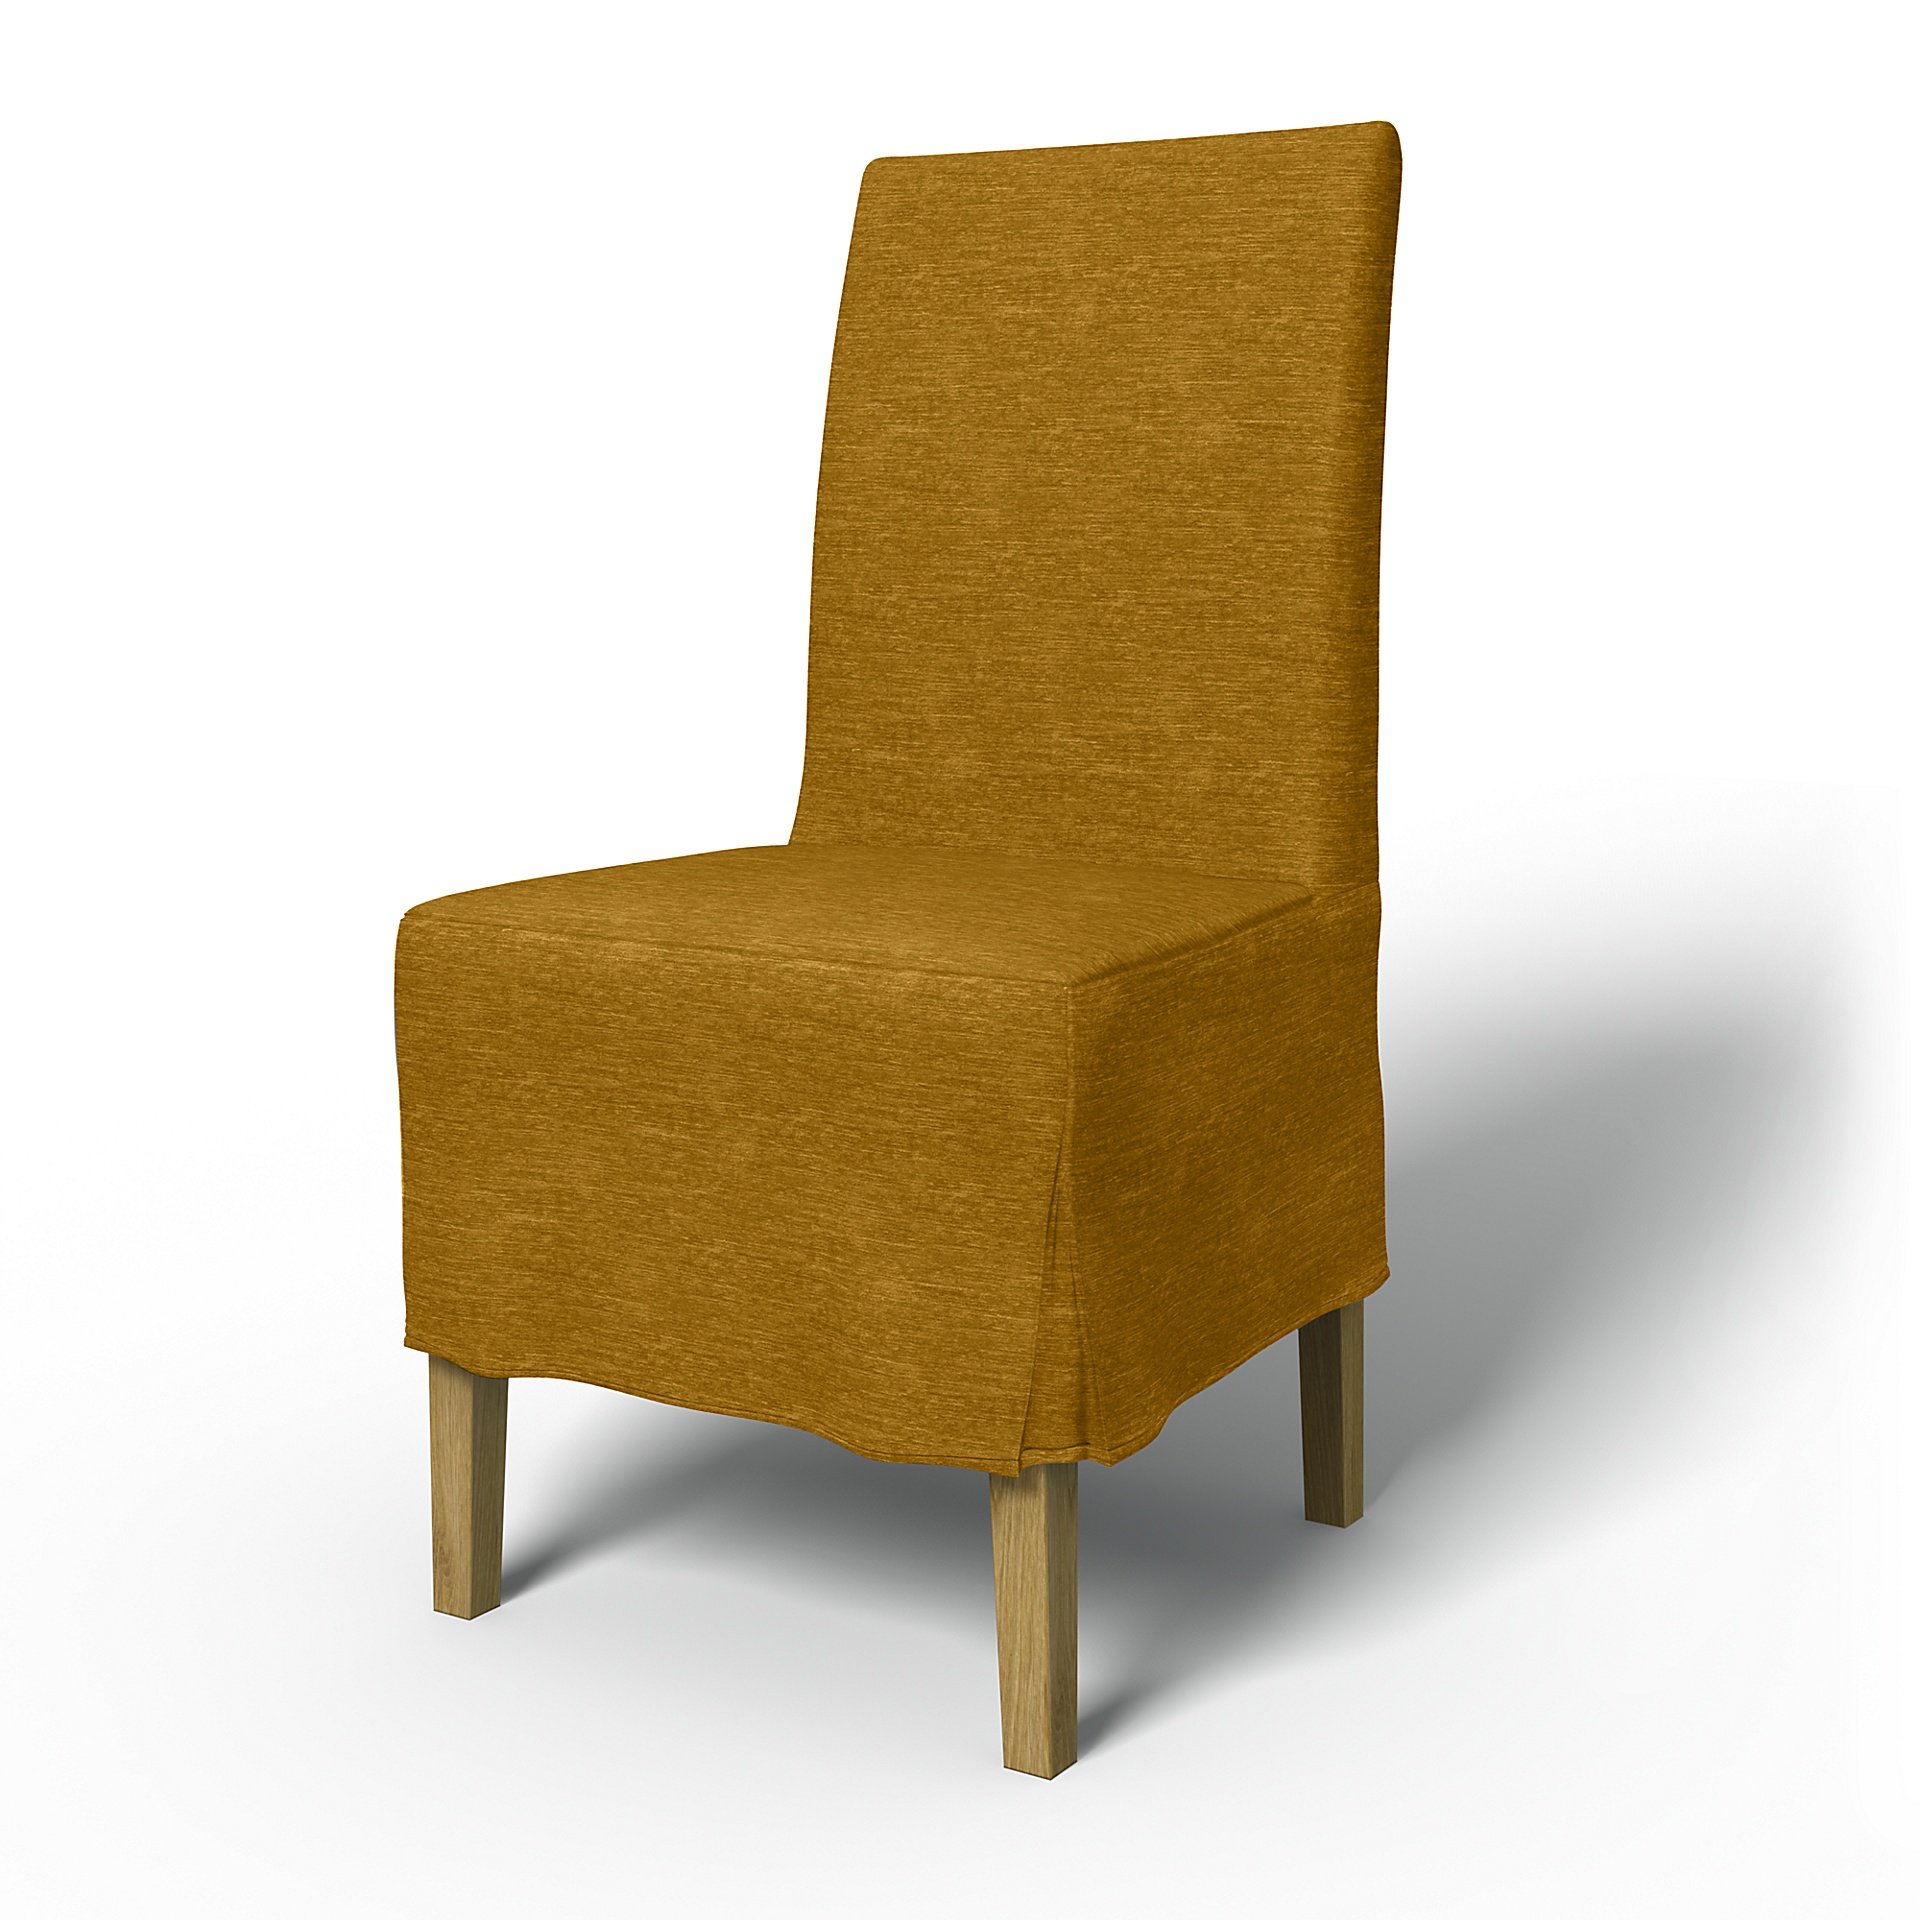 IKEA - Henriksdal Dining Chair Cover Medium skirt with Box Pleat (Standard model), Tumeric, Velvet -